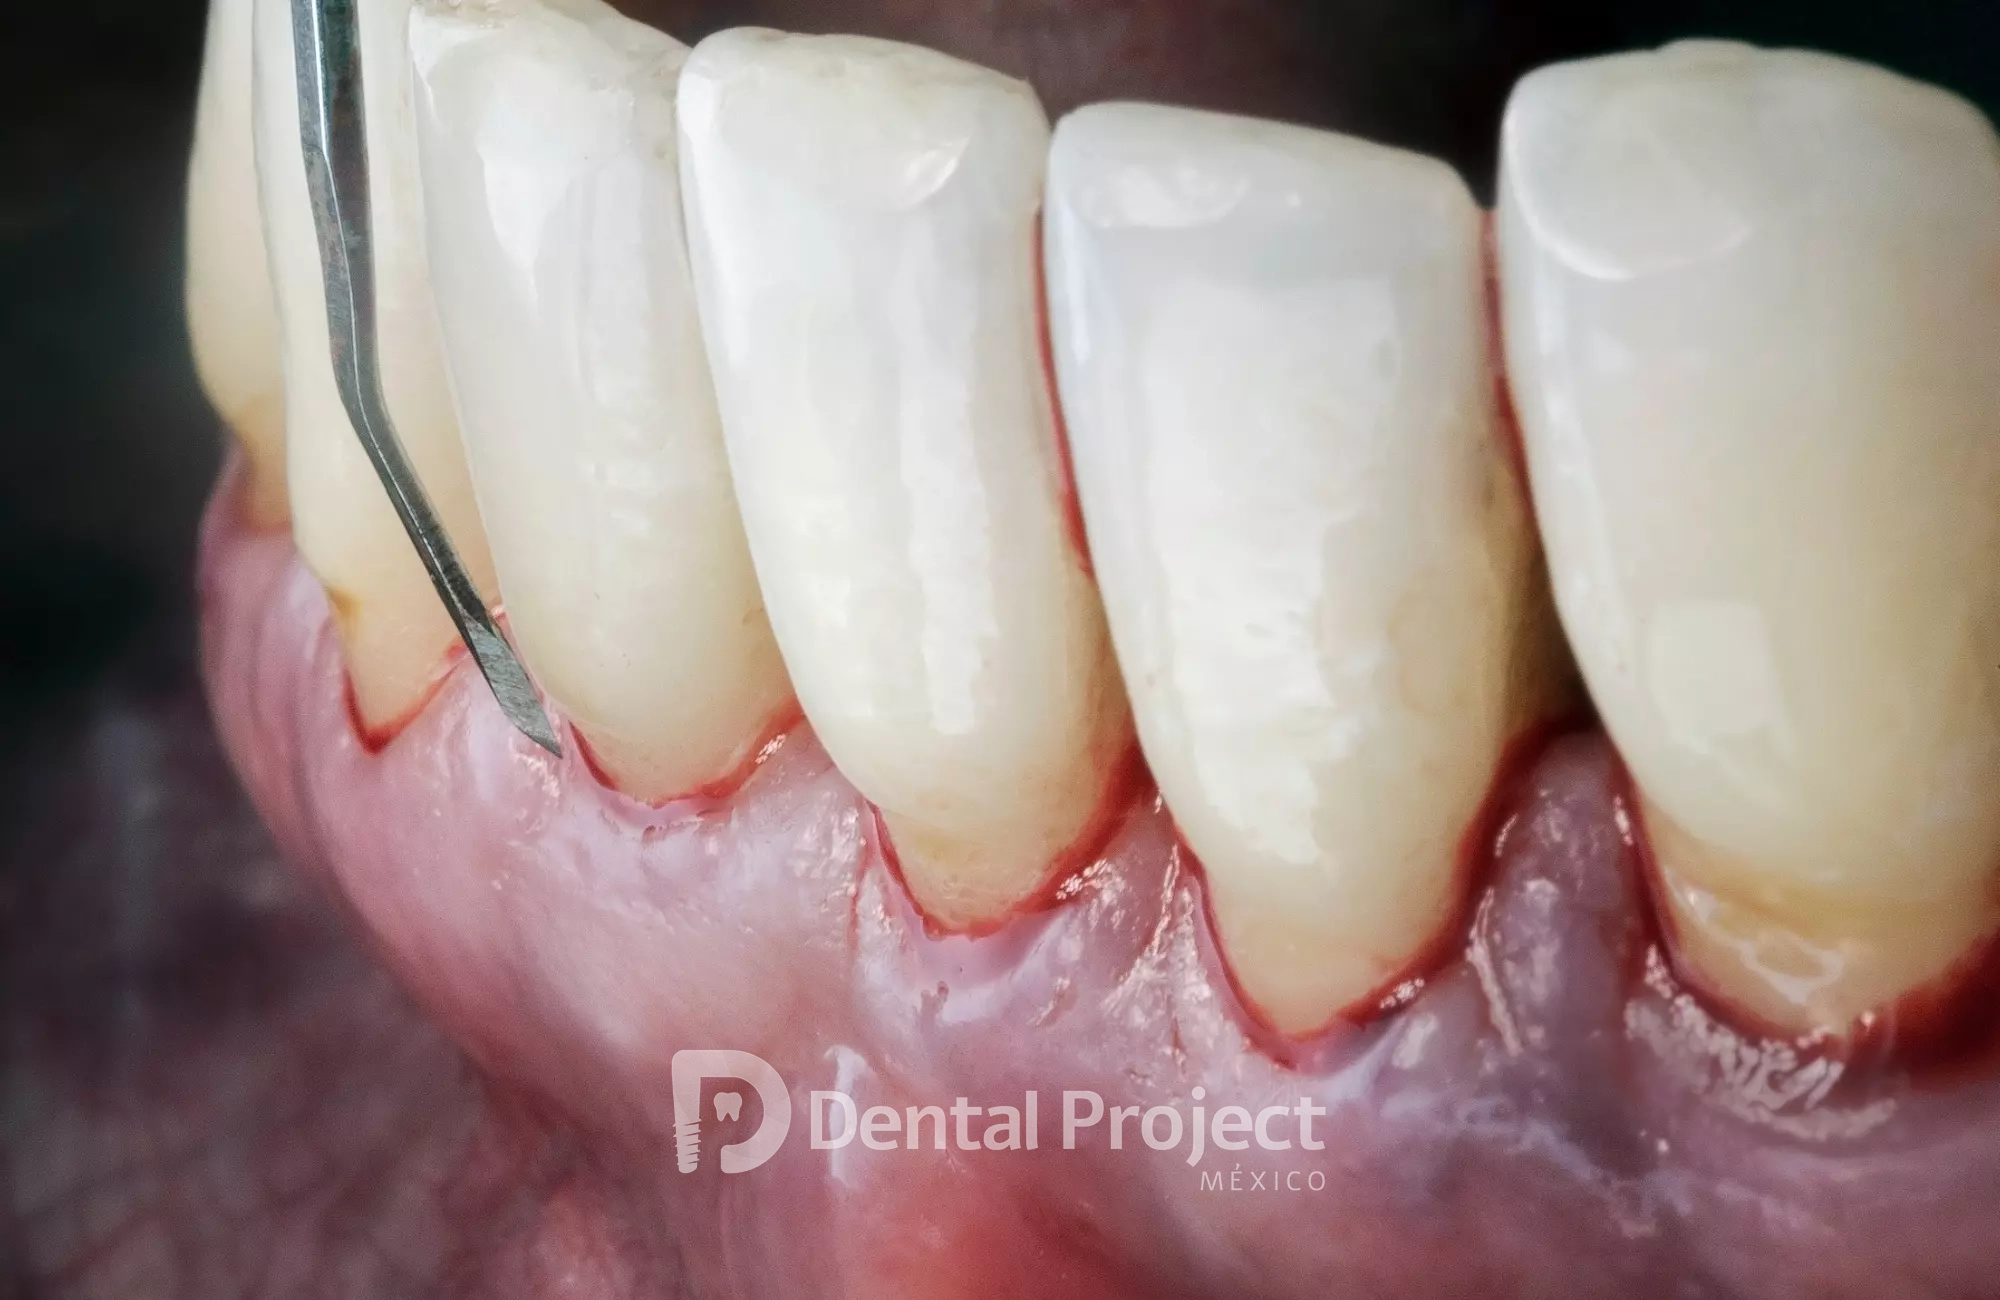 Dental Project Mexico Periodontics.